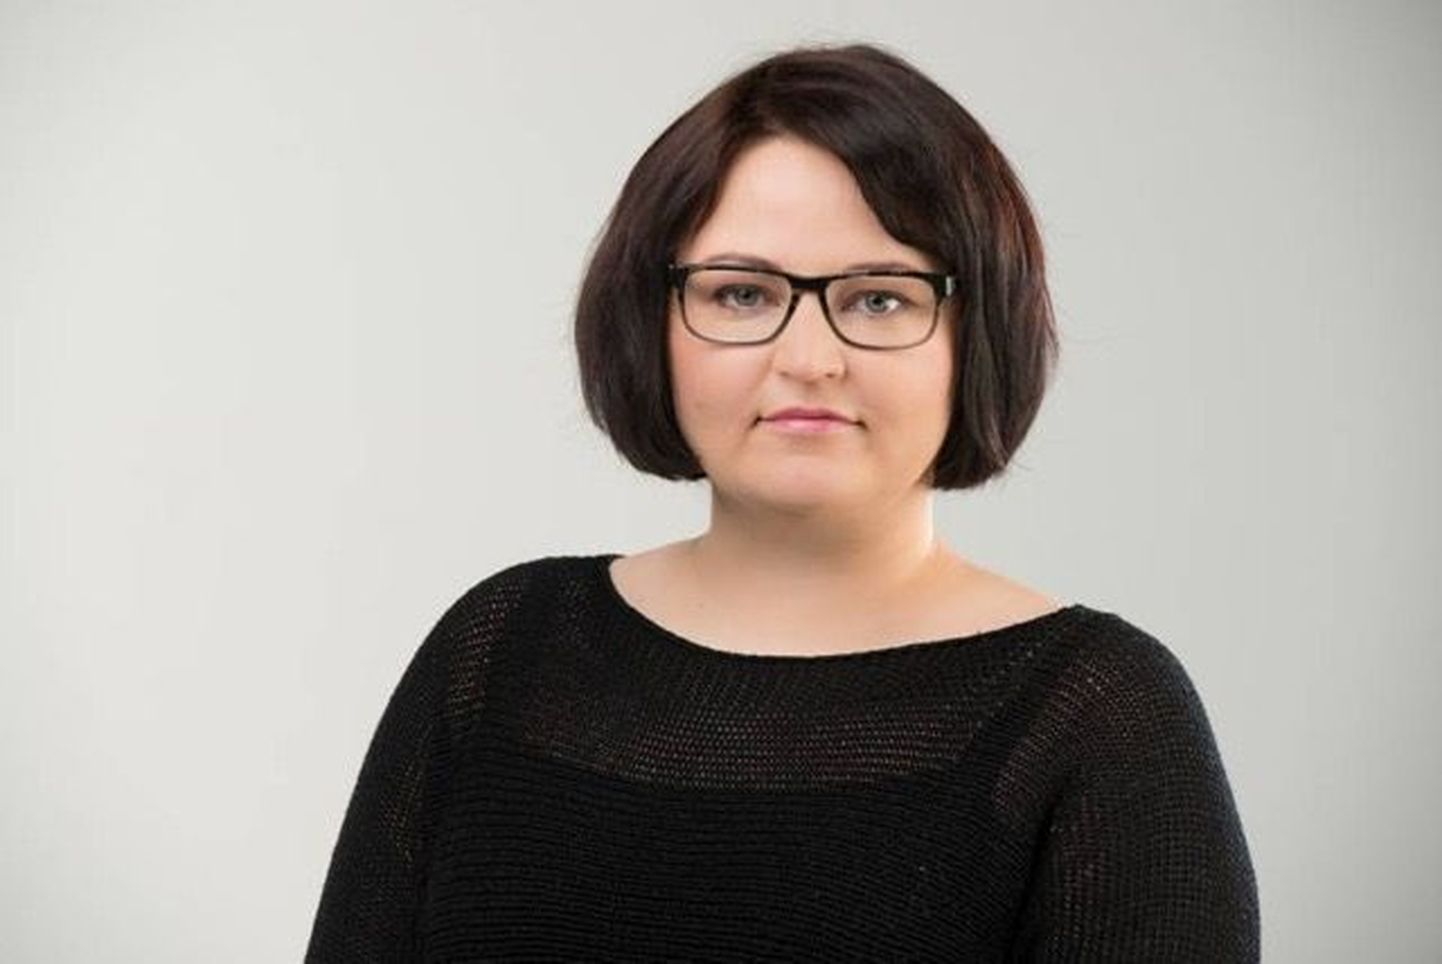 Eesti Inimõiguste Keskuse võrdse kohtlemise ekspert Kelly Grossthal